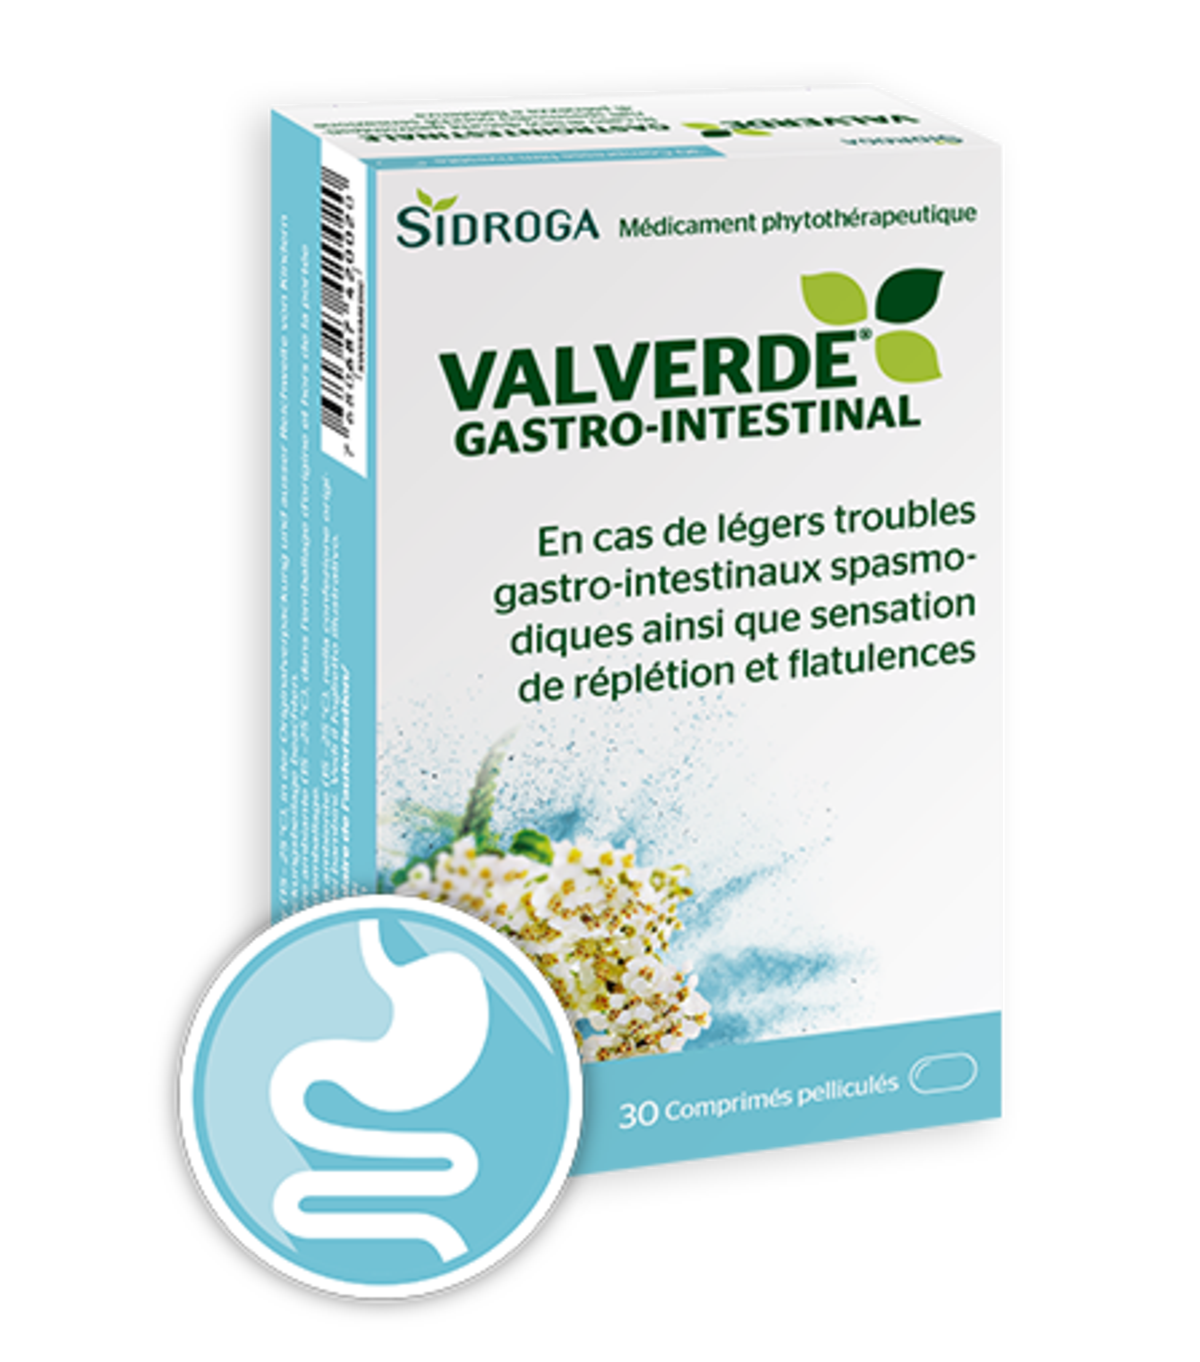 Emballage de Valverde Gastro-Intestinal